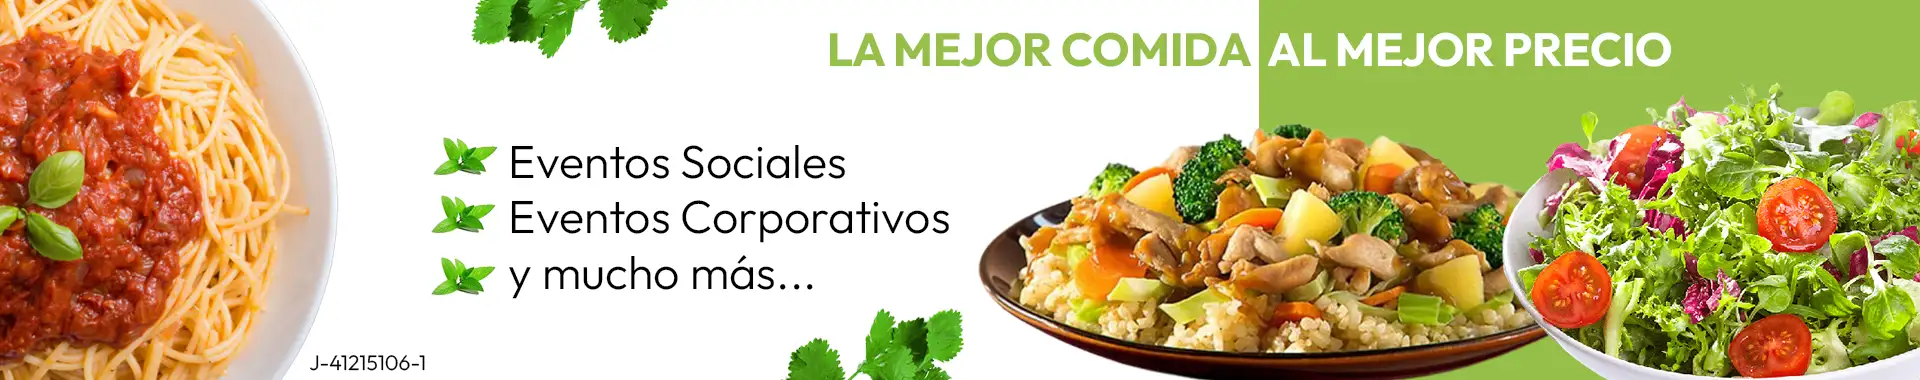 Imagen 2 del perfil de Doral Foods by El Mesón de la Asunción